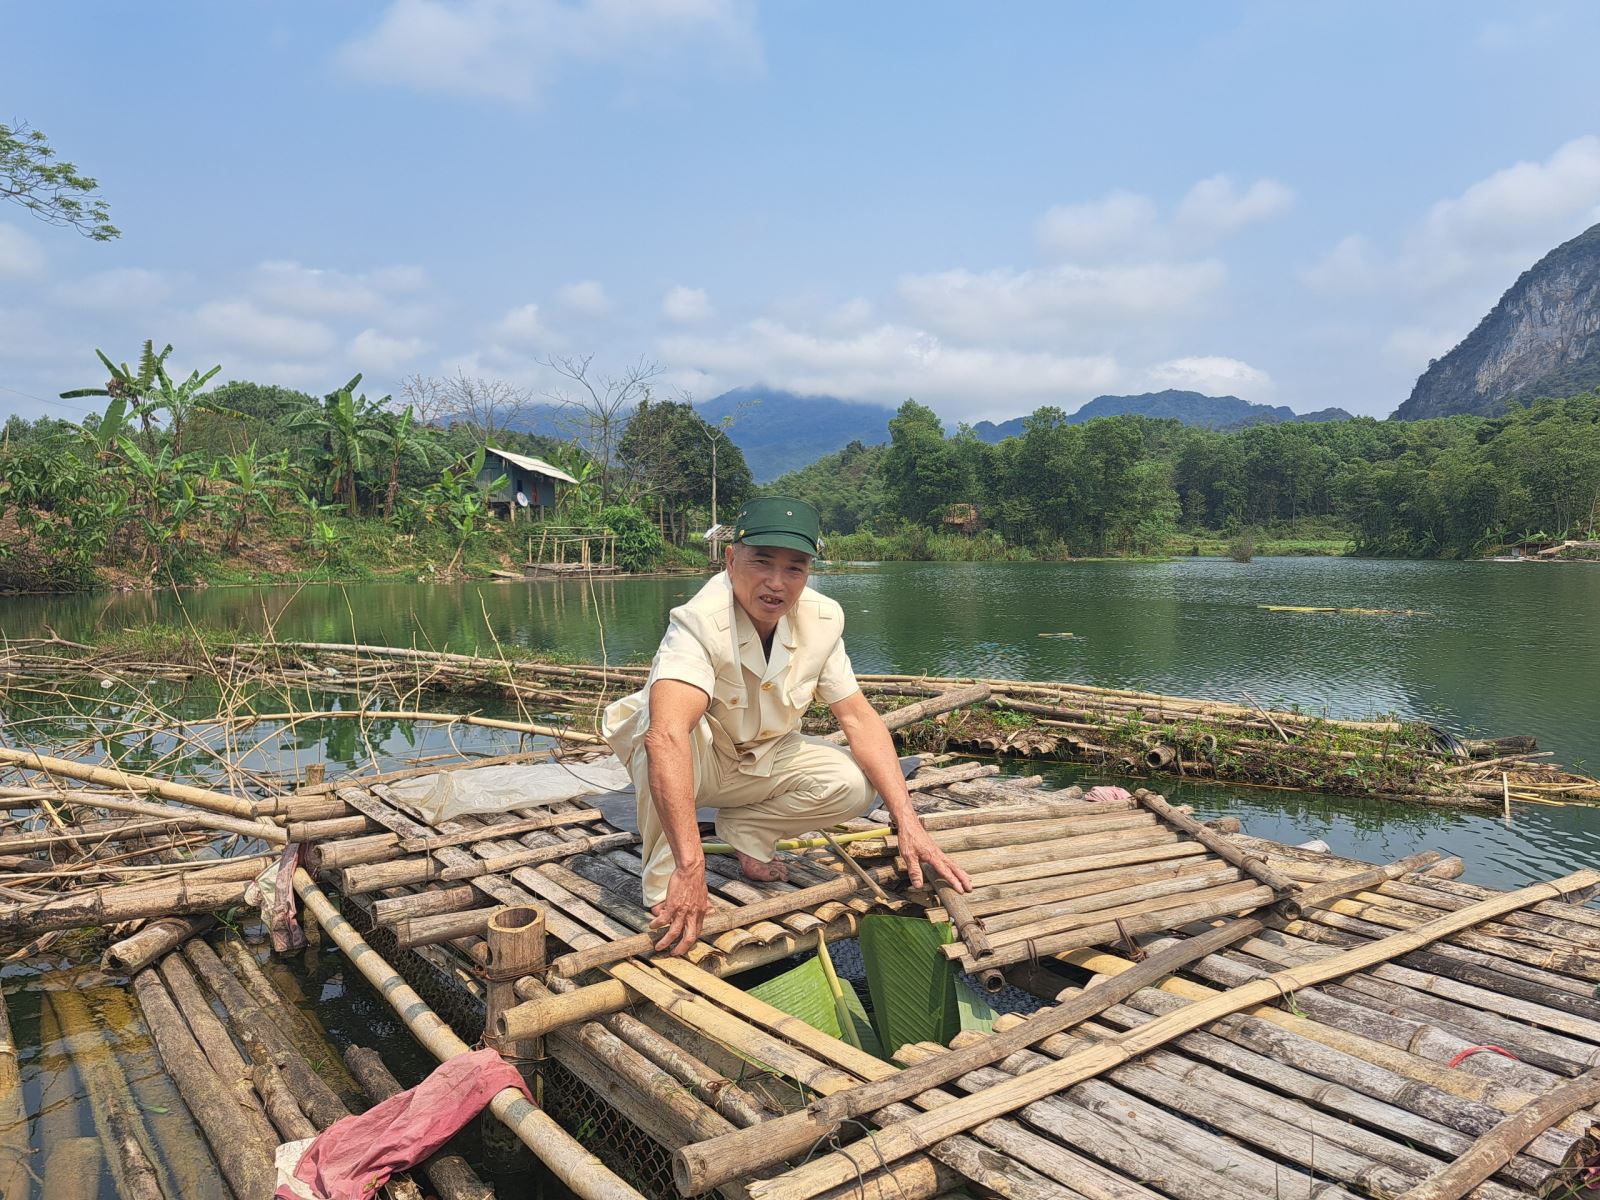 Hộ ông Trương Văn Hậu, khu phố Măng, thị trấn Cành Nàng, lựa chọn nuôi cá lồng phù hợp với địa hình gia đình